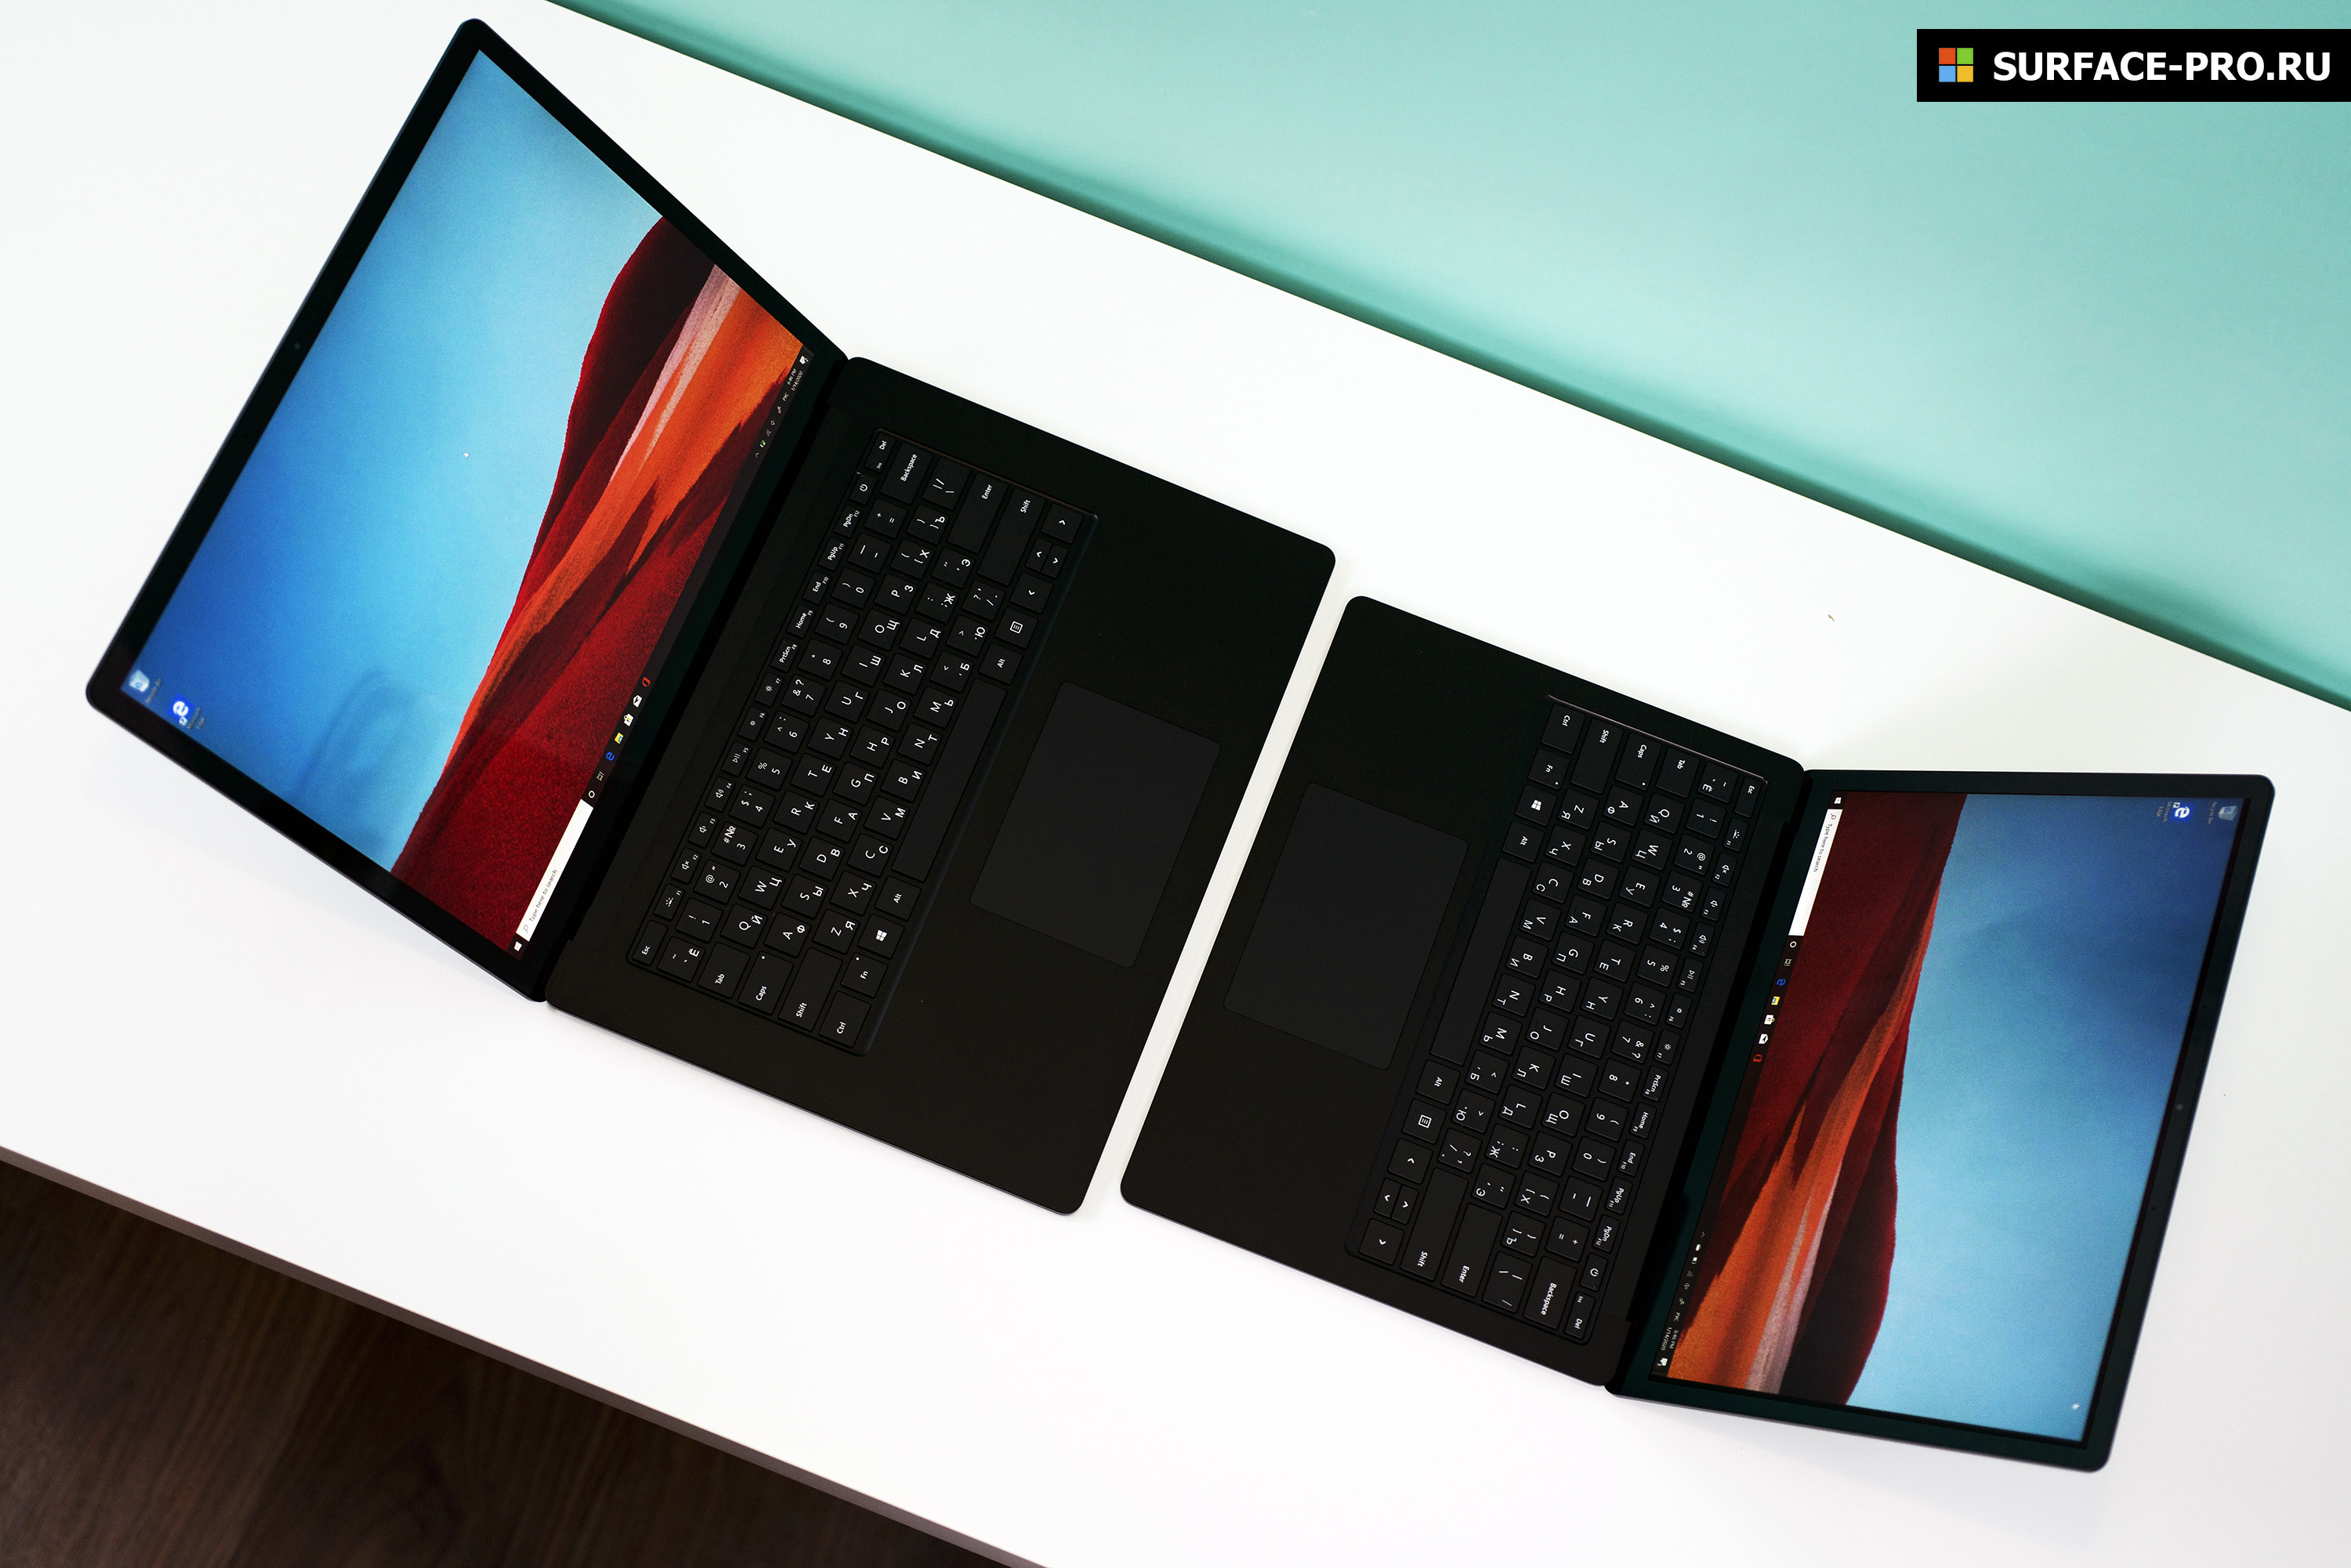 Ноутбук Microsoft Surface 3 Купить